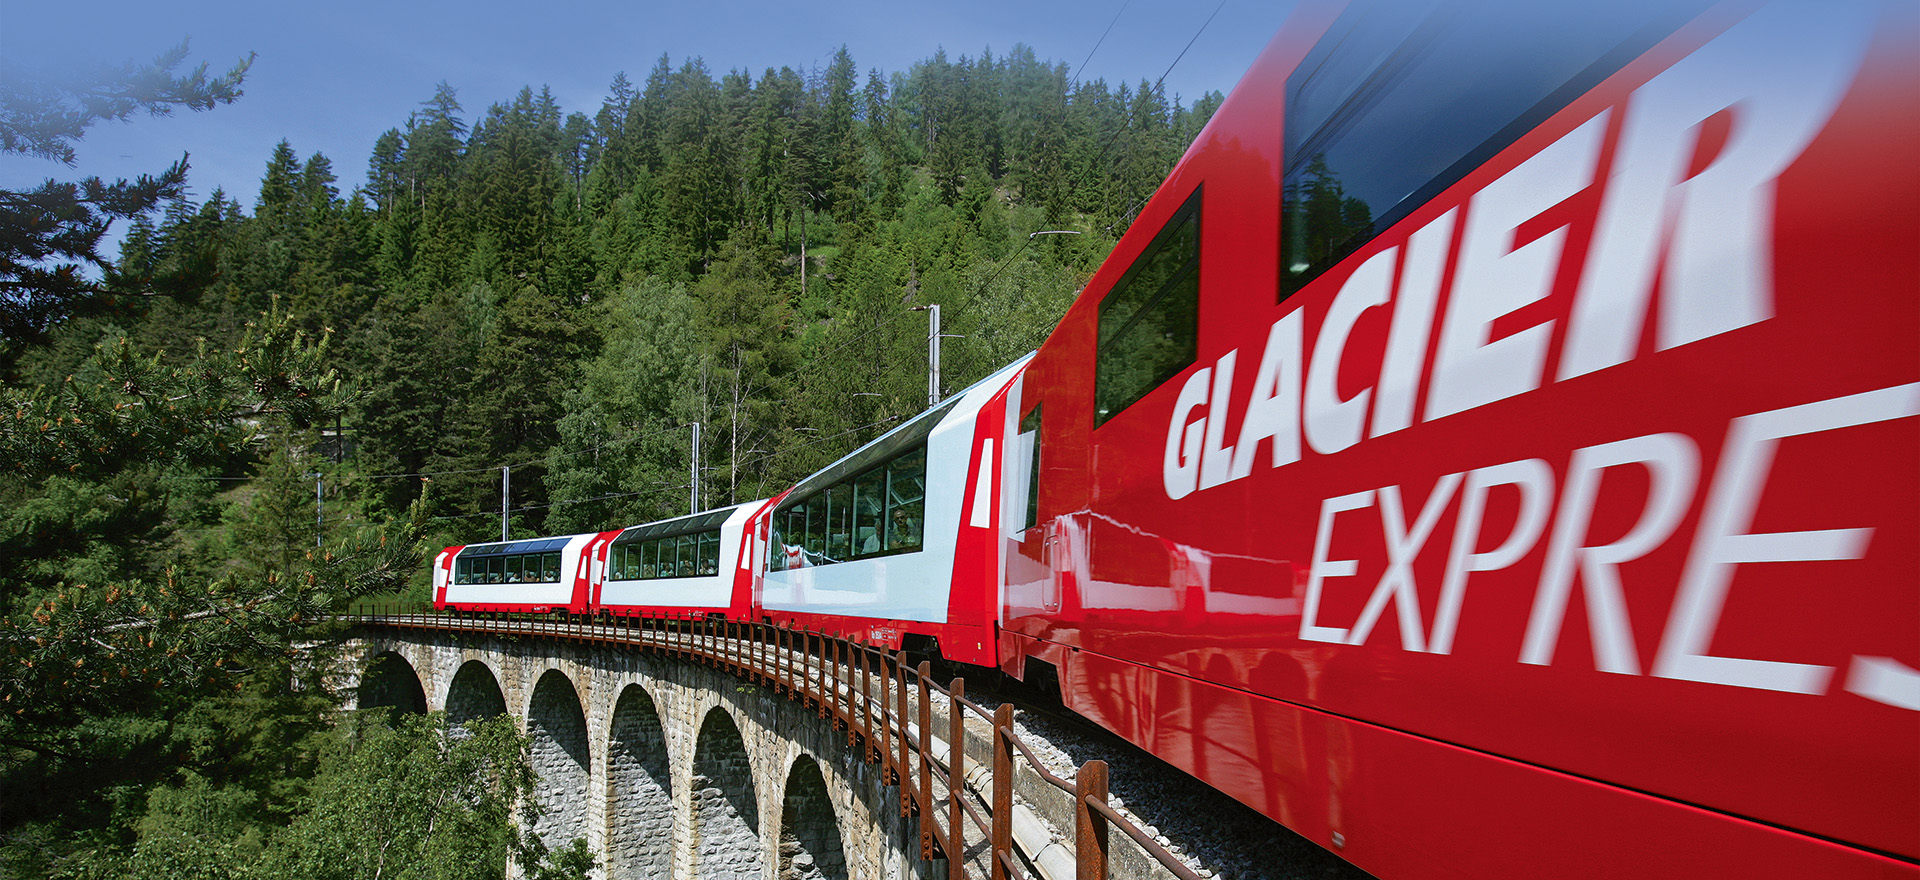 Жд туры из перми. Гласиер экспресс Швейцария. Поезд с панорамными окнами в Швейцарии. Экскурсионный поезд с панорамными окнами. Экскурсия на поезде с панорамными окнами.